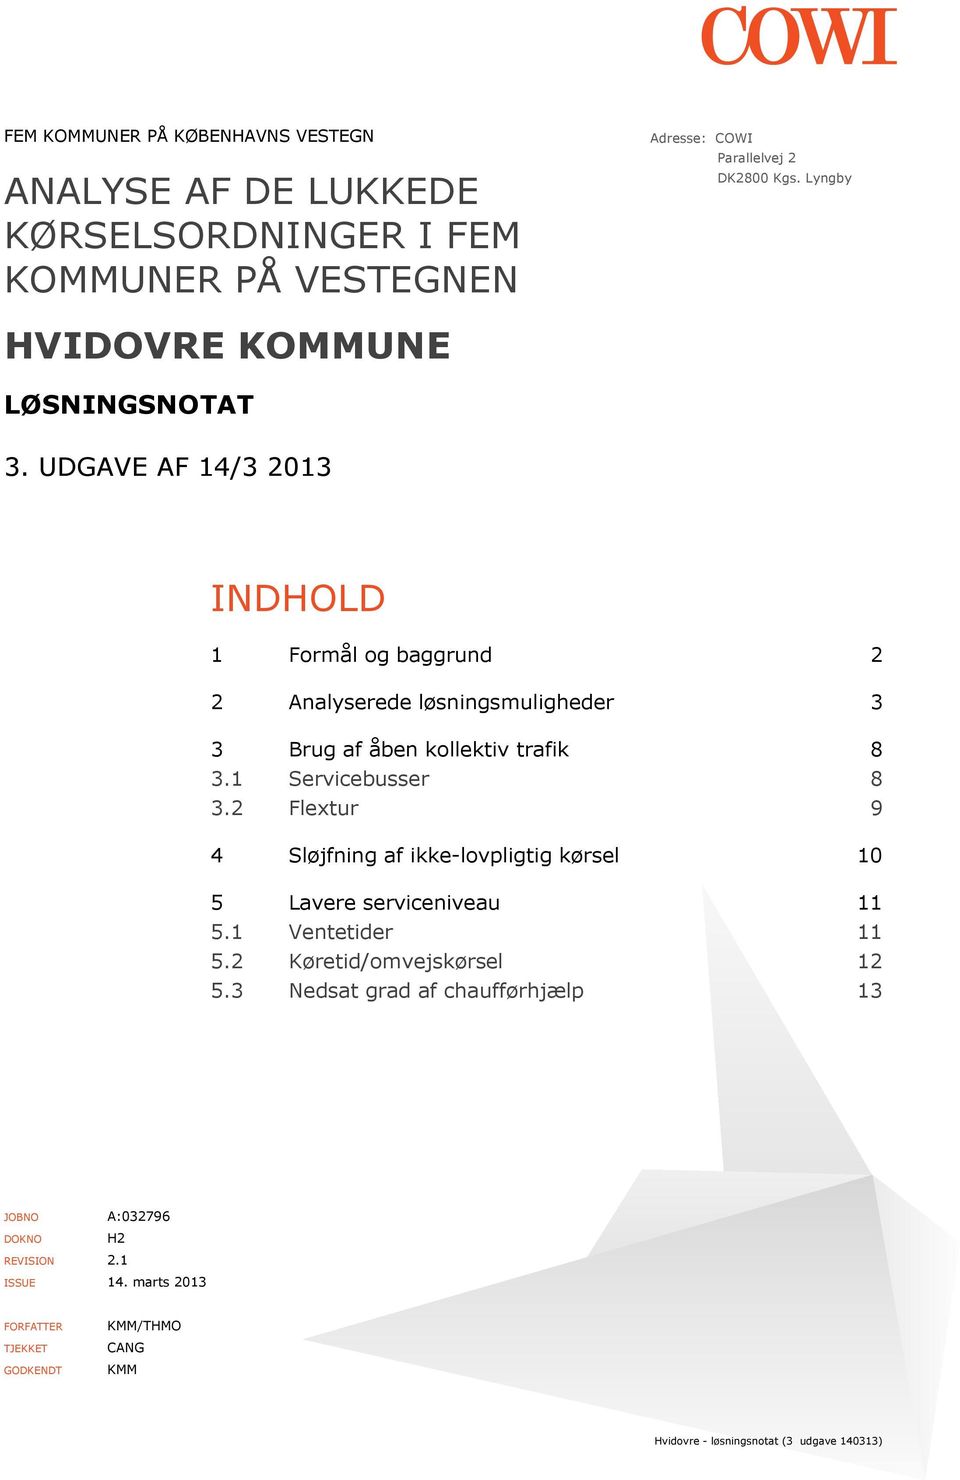 UDGAVE AF 14/3 2013 INDHOLD 1 Formål og baggrund 2 2 Analyserede løsningsmuligheder 3 3 Brug af åben kollektiv trafik 8 3.1 Servicebusser 8 3.